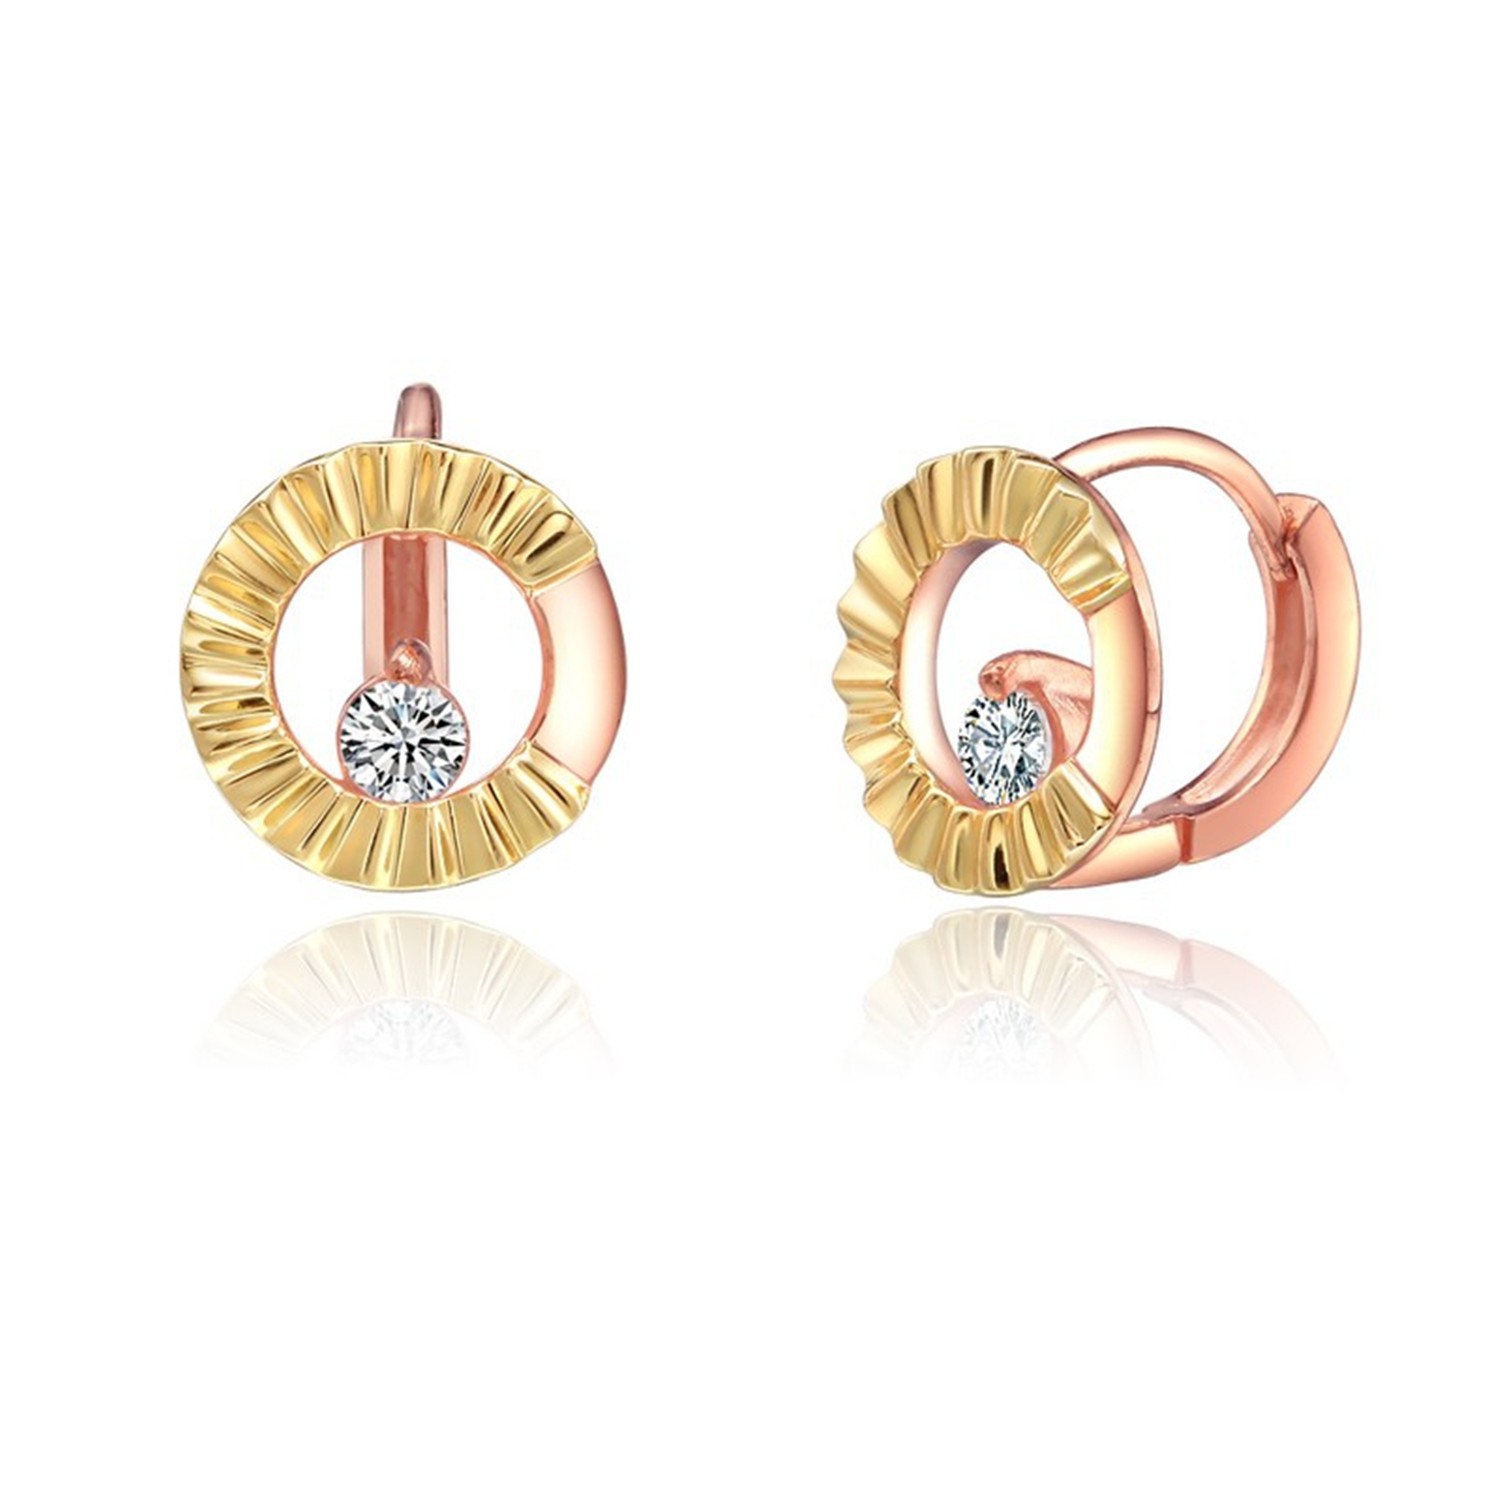 2021 New design minimalist rose gold zirconia women earrings double hoop earrings jewelry